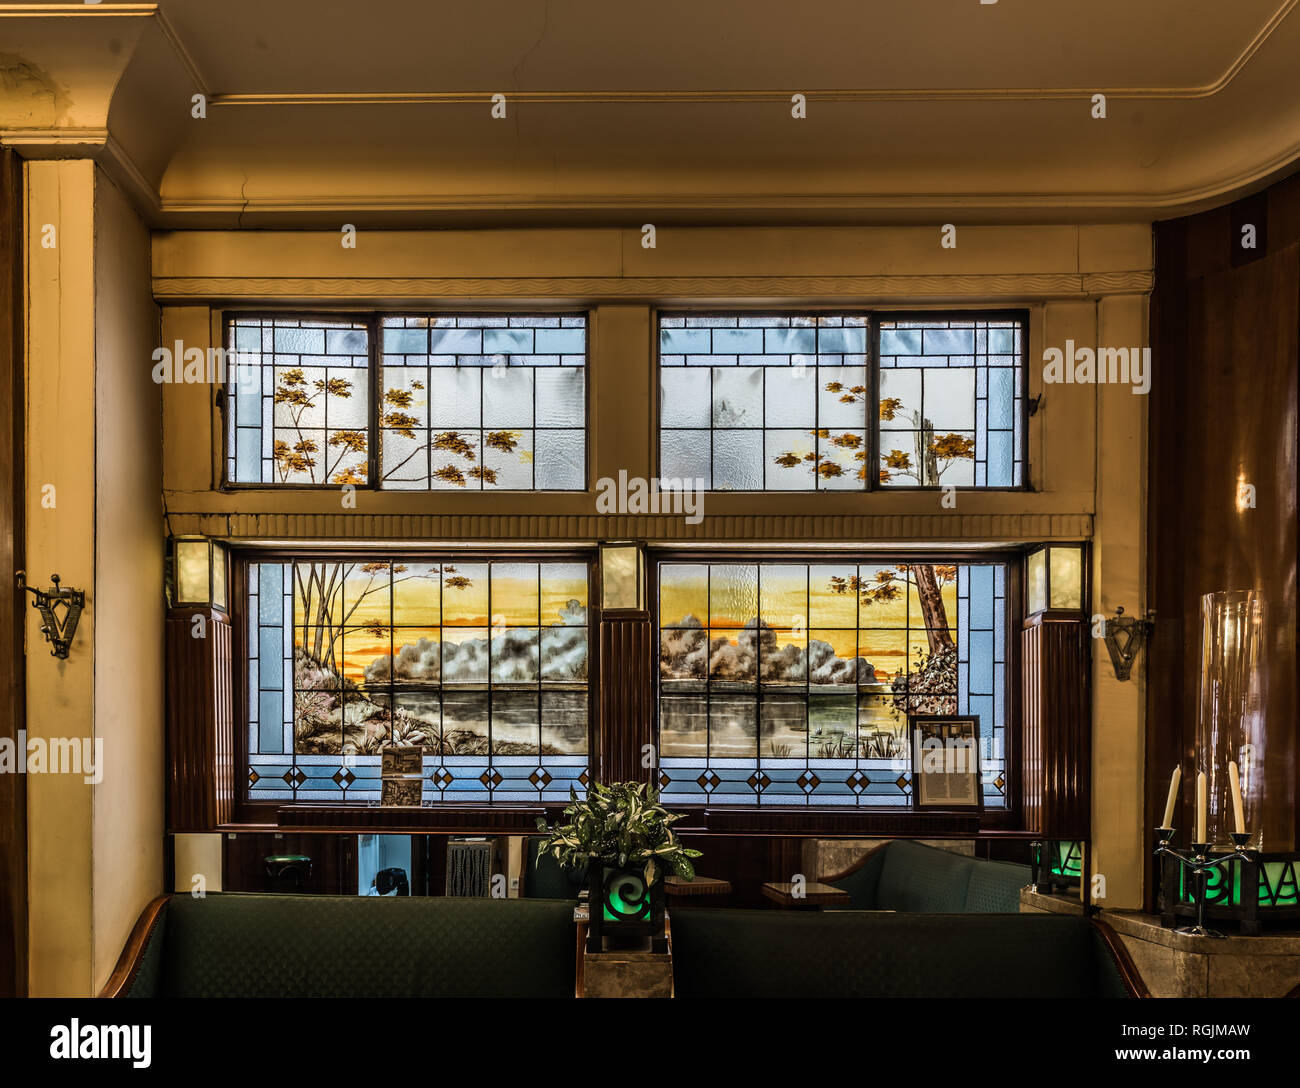 Bruxelles, Belgique - 01 18 2019 : Art déco design intérieur de la taverne L'Espérance, avec des vitraux et des meubles anciens Banque D'Images